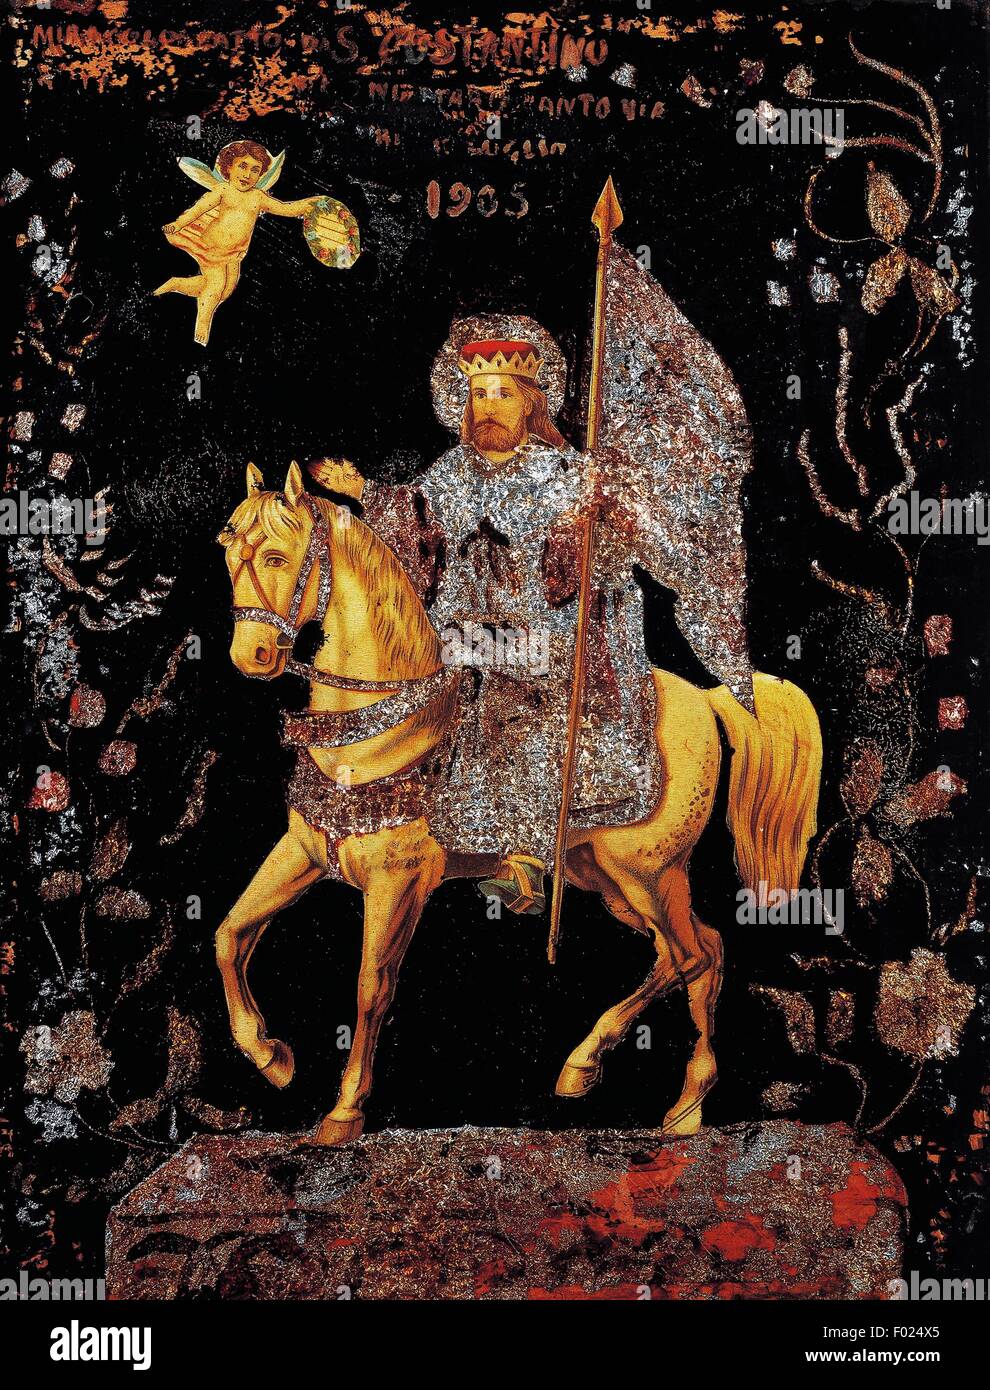 St. Constantine auf dem Pferderücken, ex-Voto, Heiligtum der Heiligen Konstantin, Sedilo, Sardinien, 20. Jahrhundert. Stockfoto